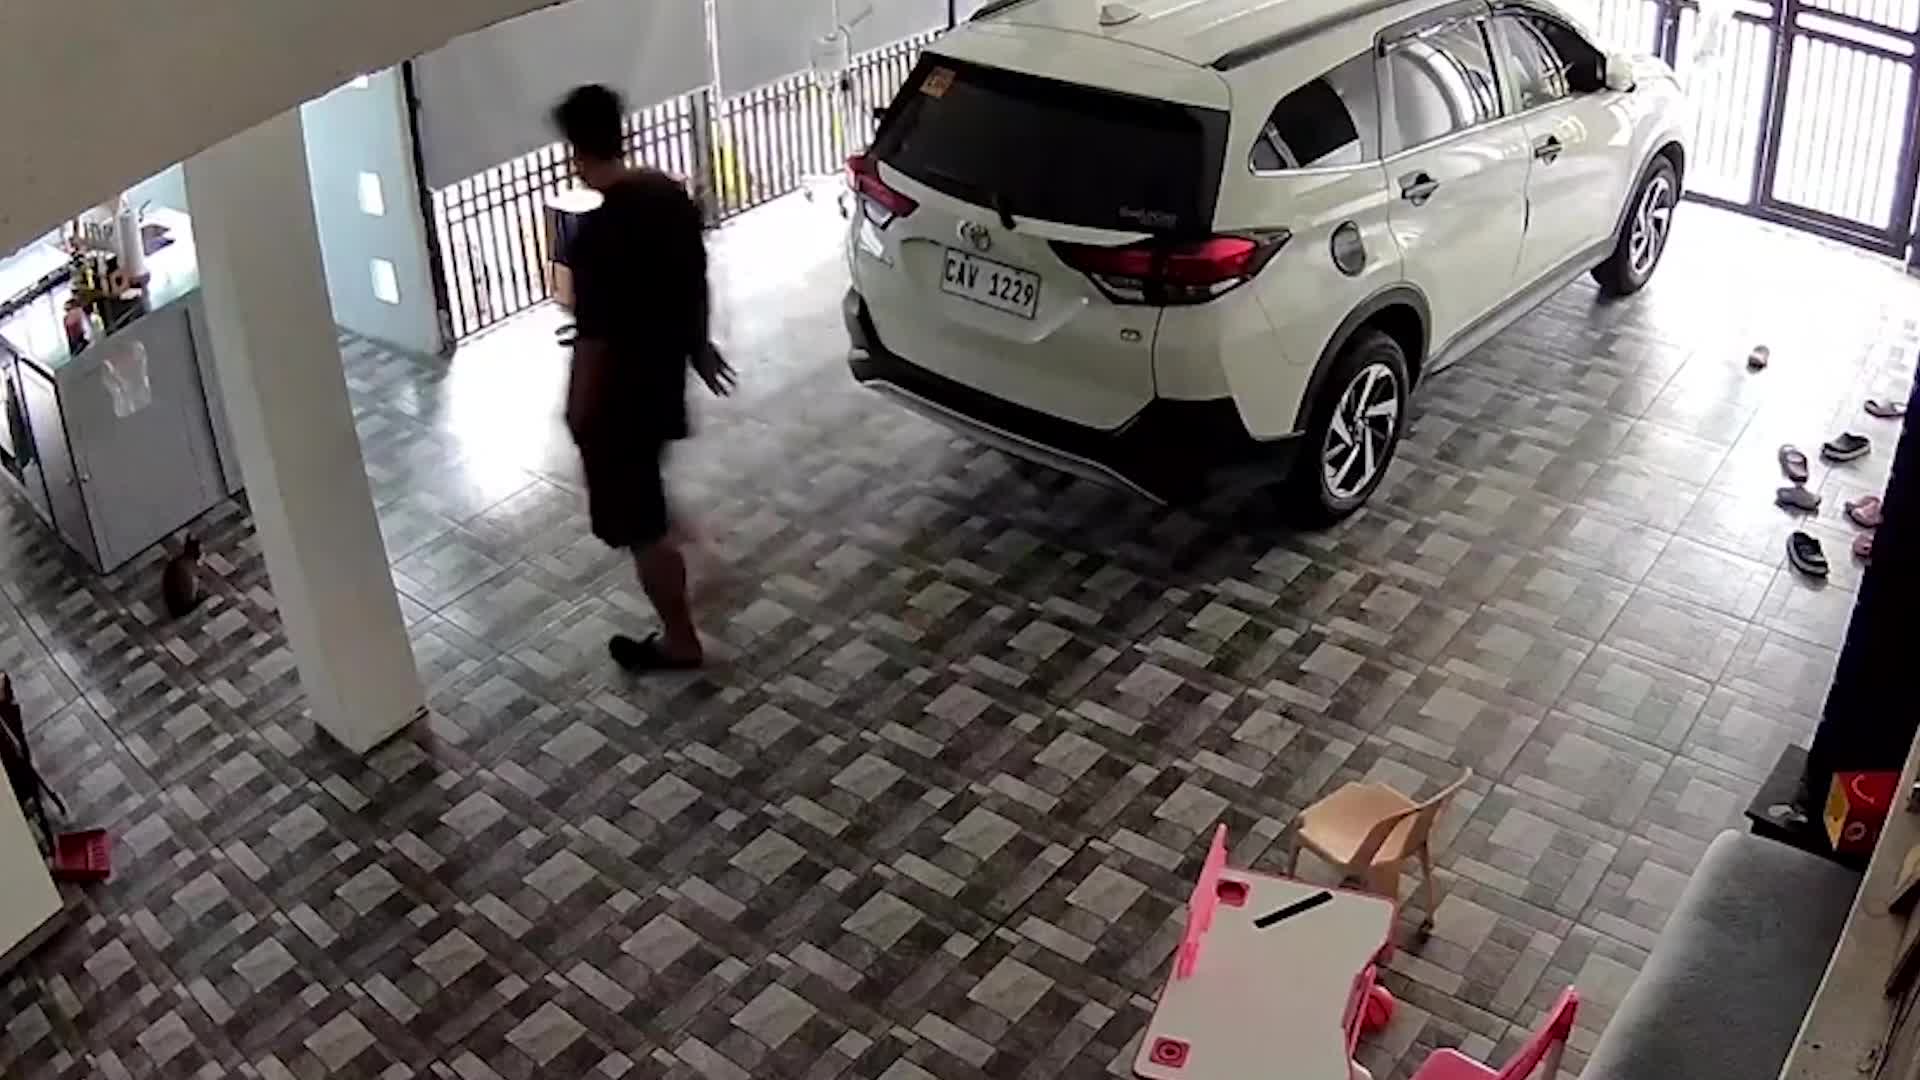 Video - Clip: Bị rắn hổ mang lao tới tấn công, người đàn ông sợ hãi bỏ chạy